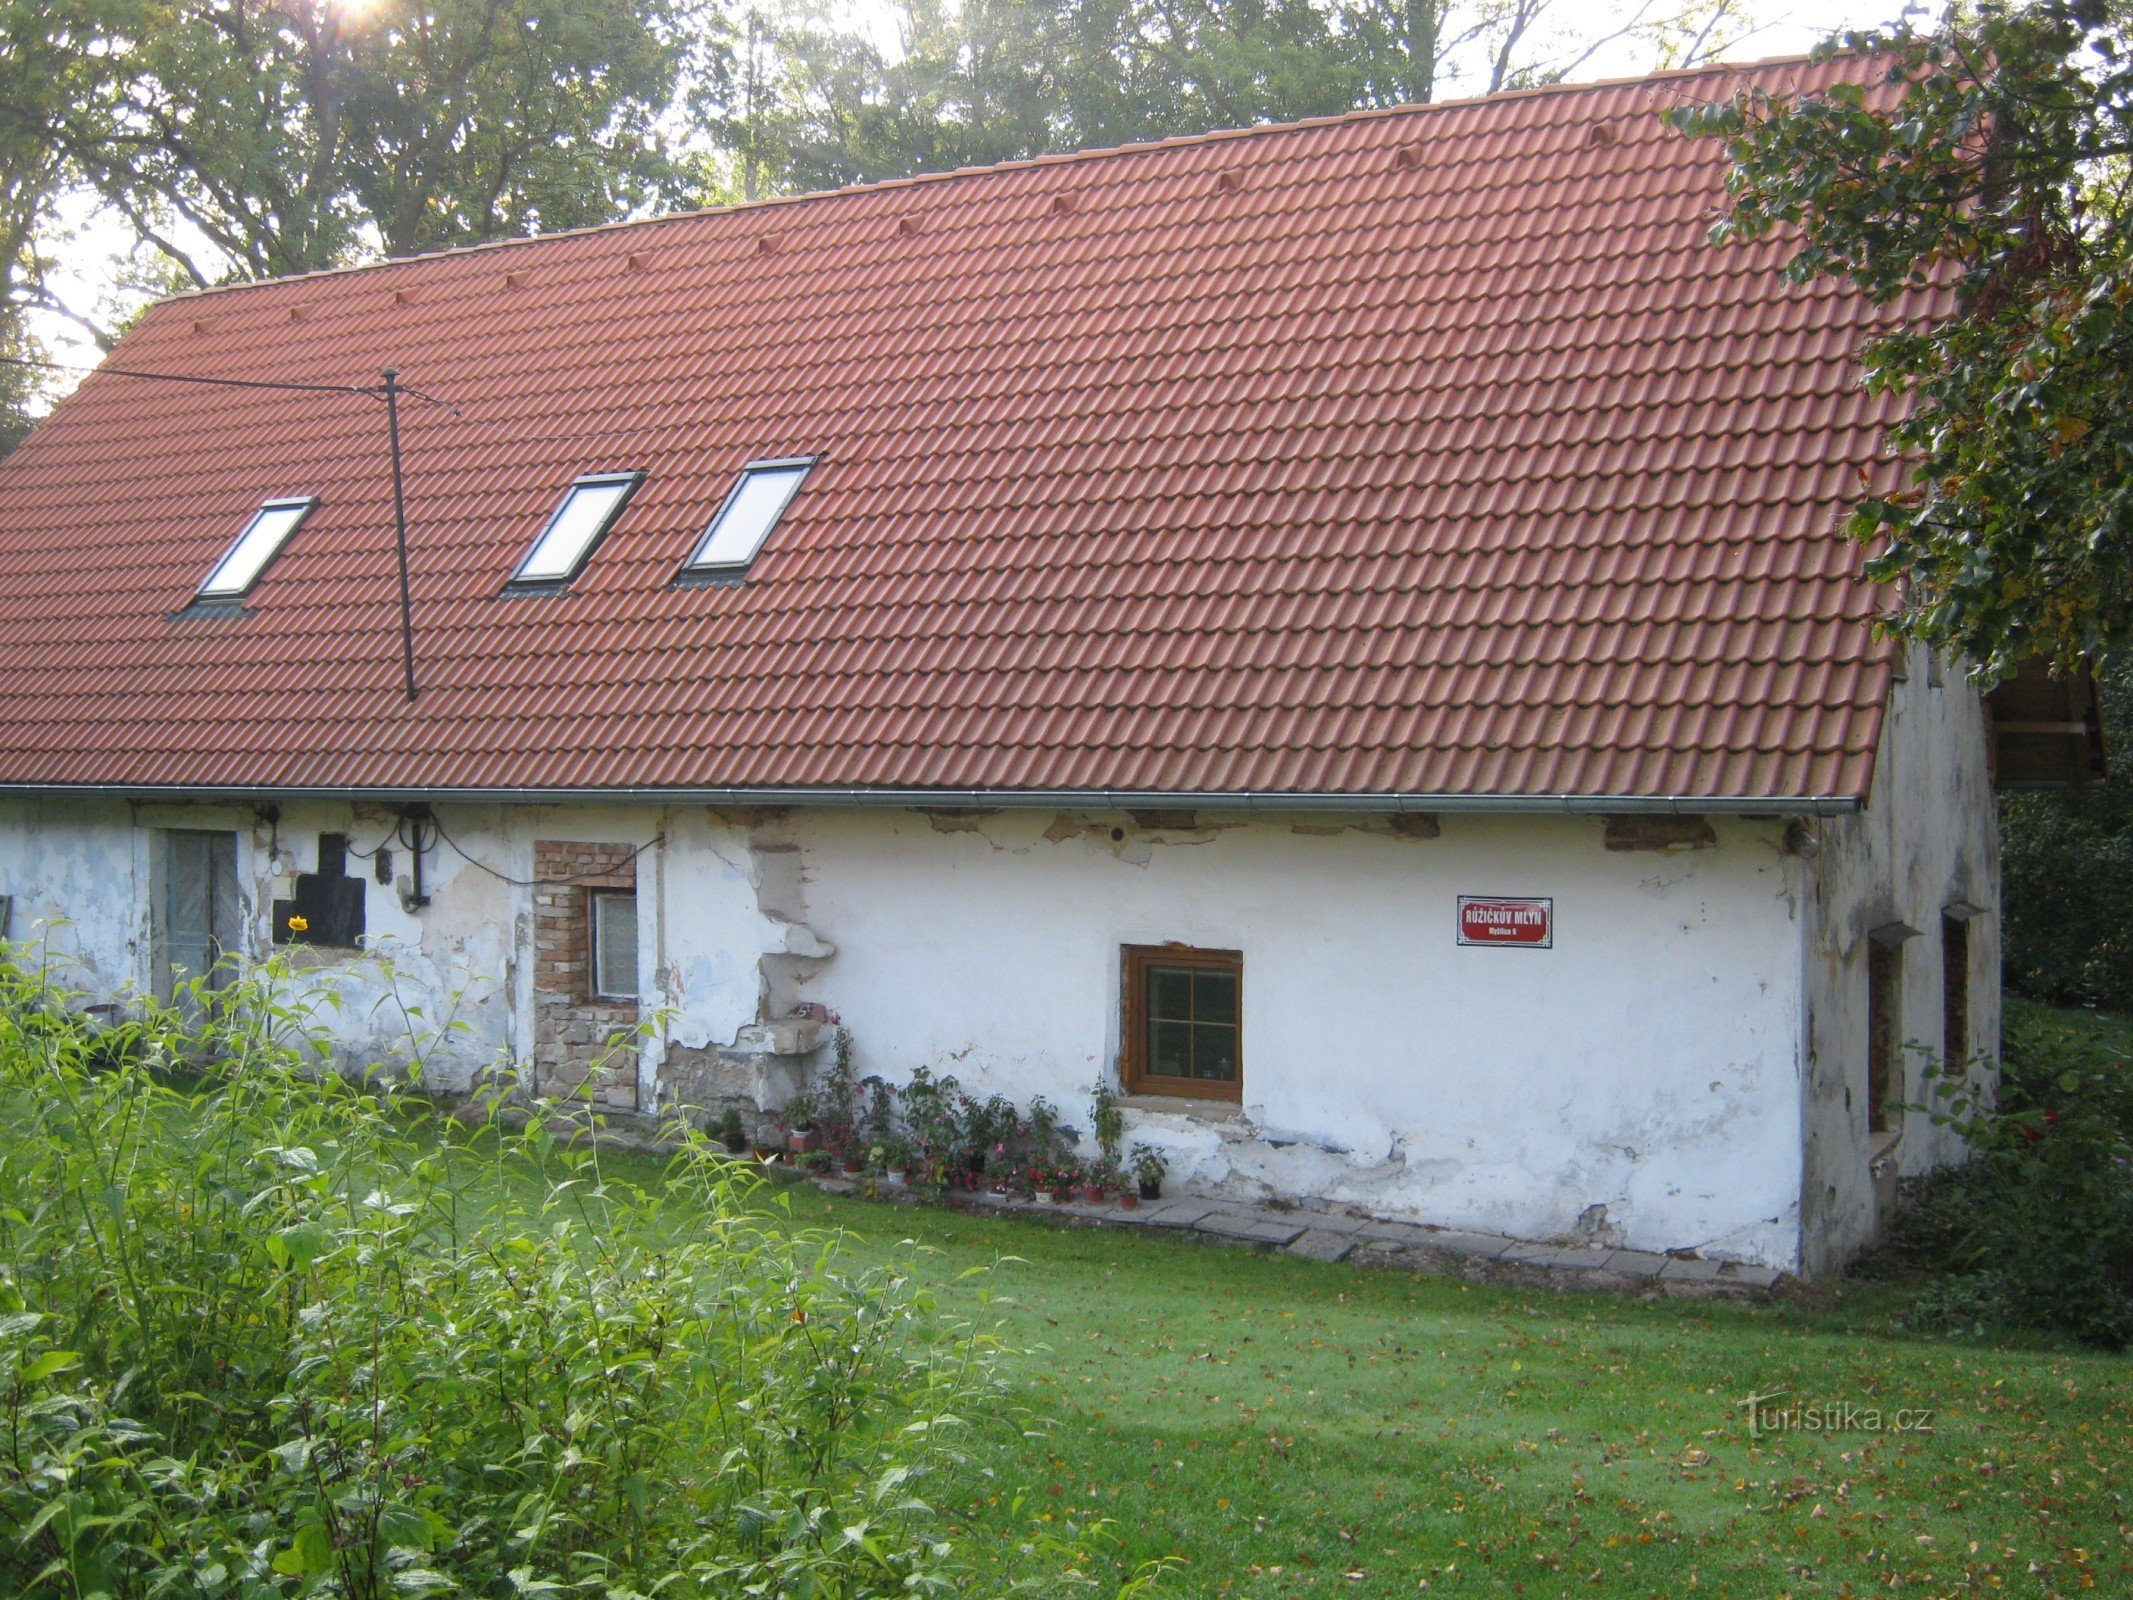 Ružičeks Mühle